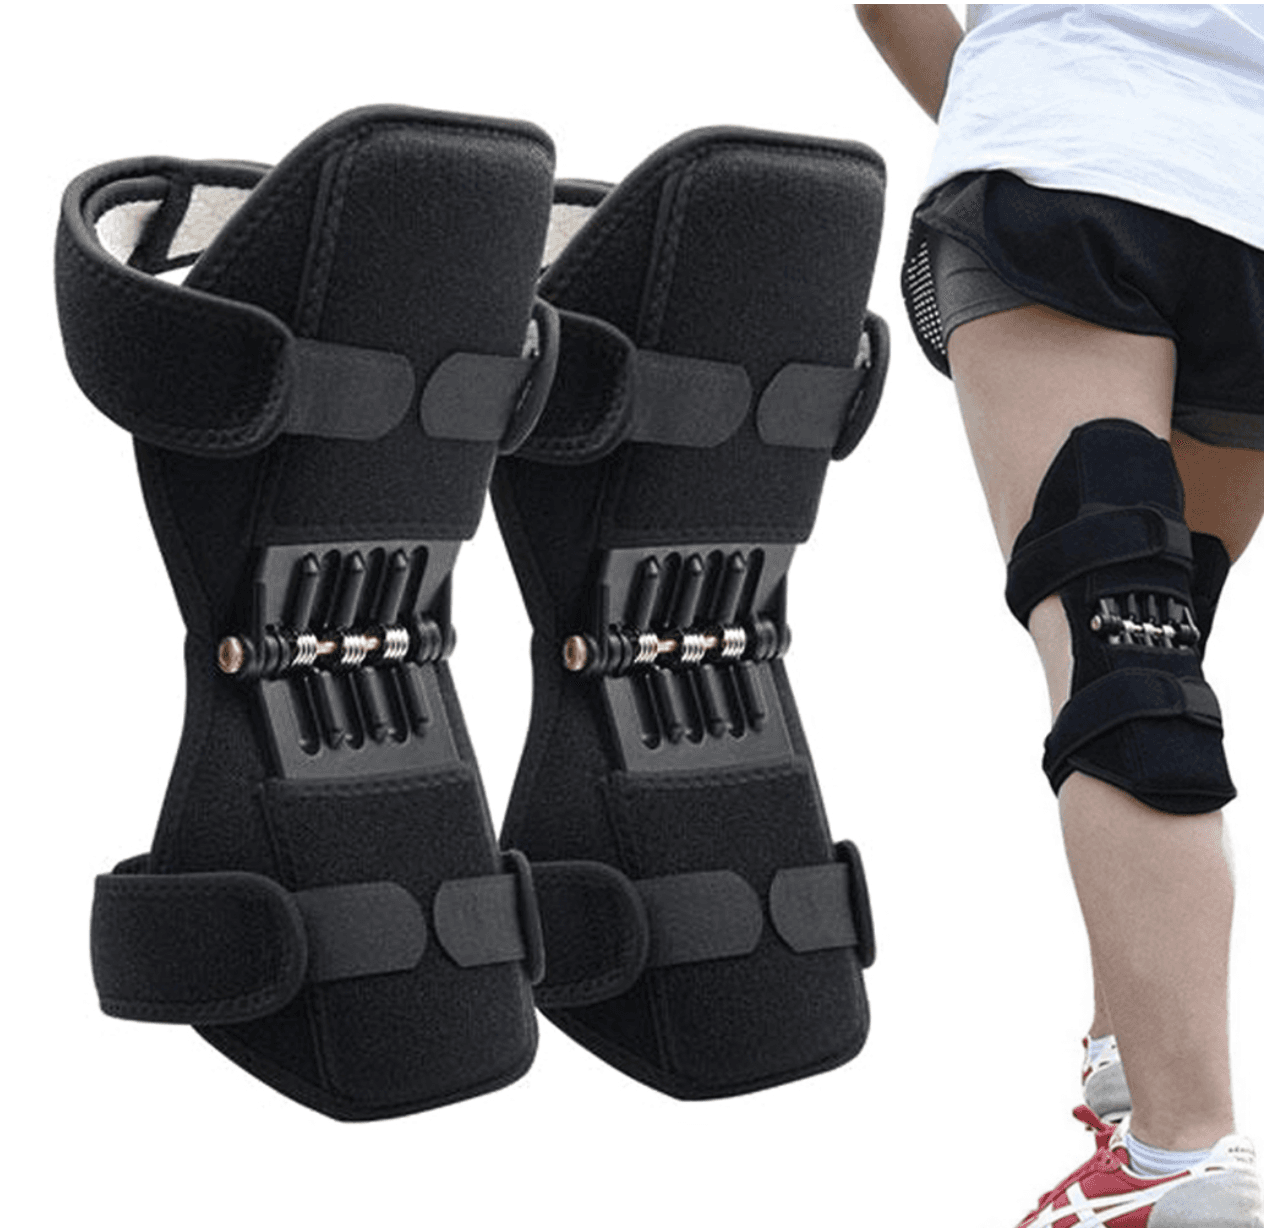 Power Knee - Stabilizatory wspomagacz na kolana - czarny, zestaw 2szt.